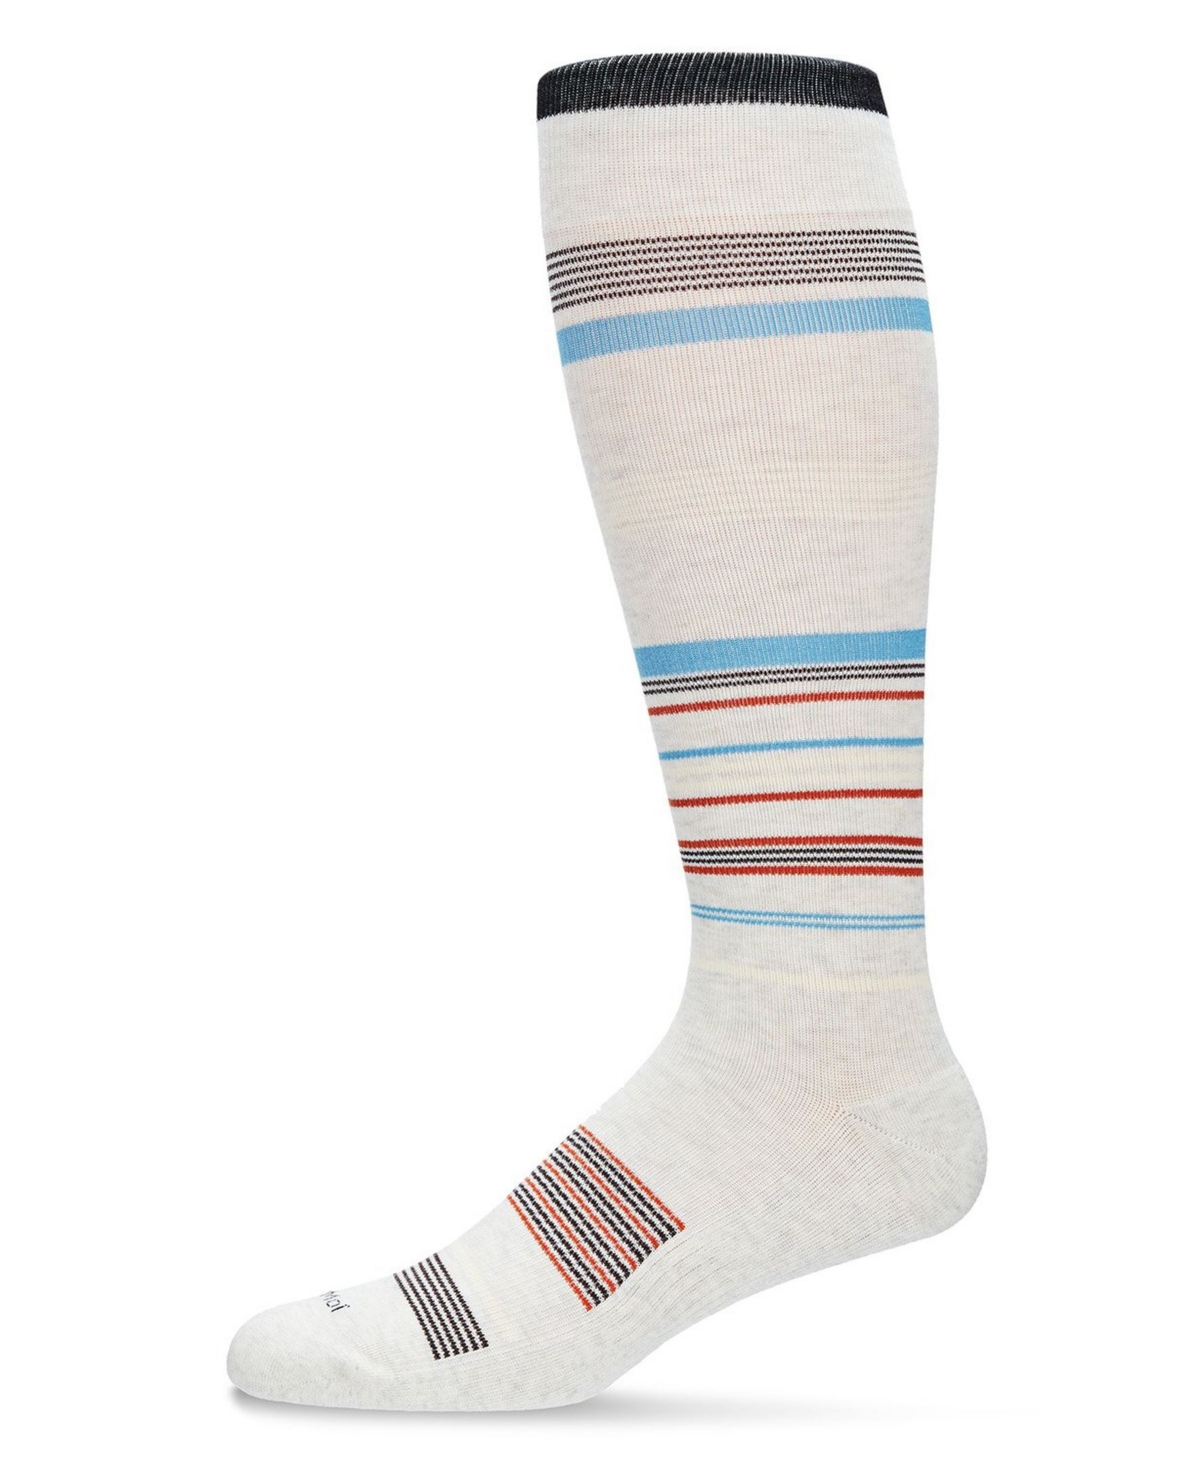 Men's Multi Striped Cotton Compression Socks - Oatmeal Heather